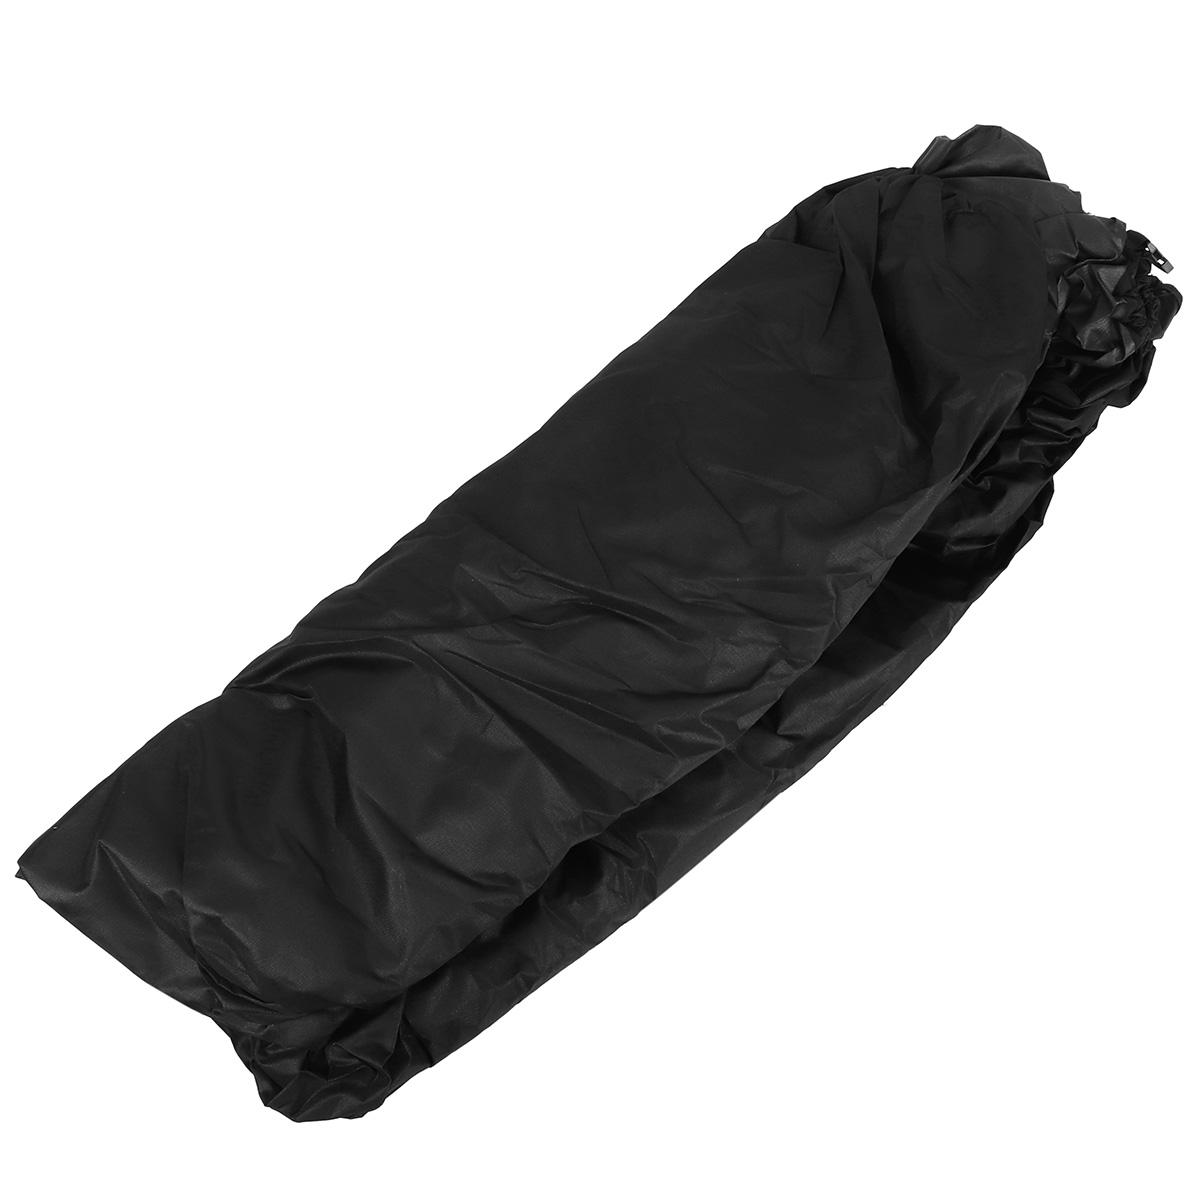 

20-22FT Trailerable Marine Grade Boat Cover UV Resistant + Mesh Bag